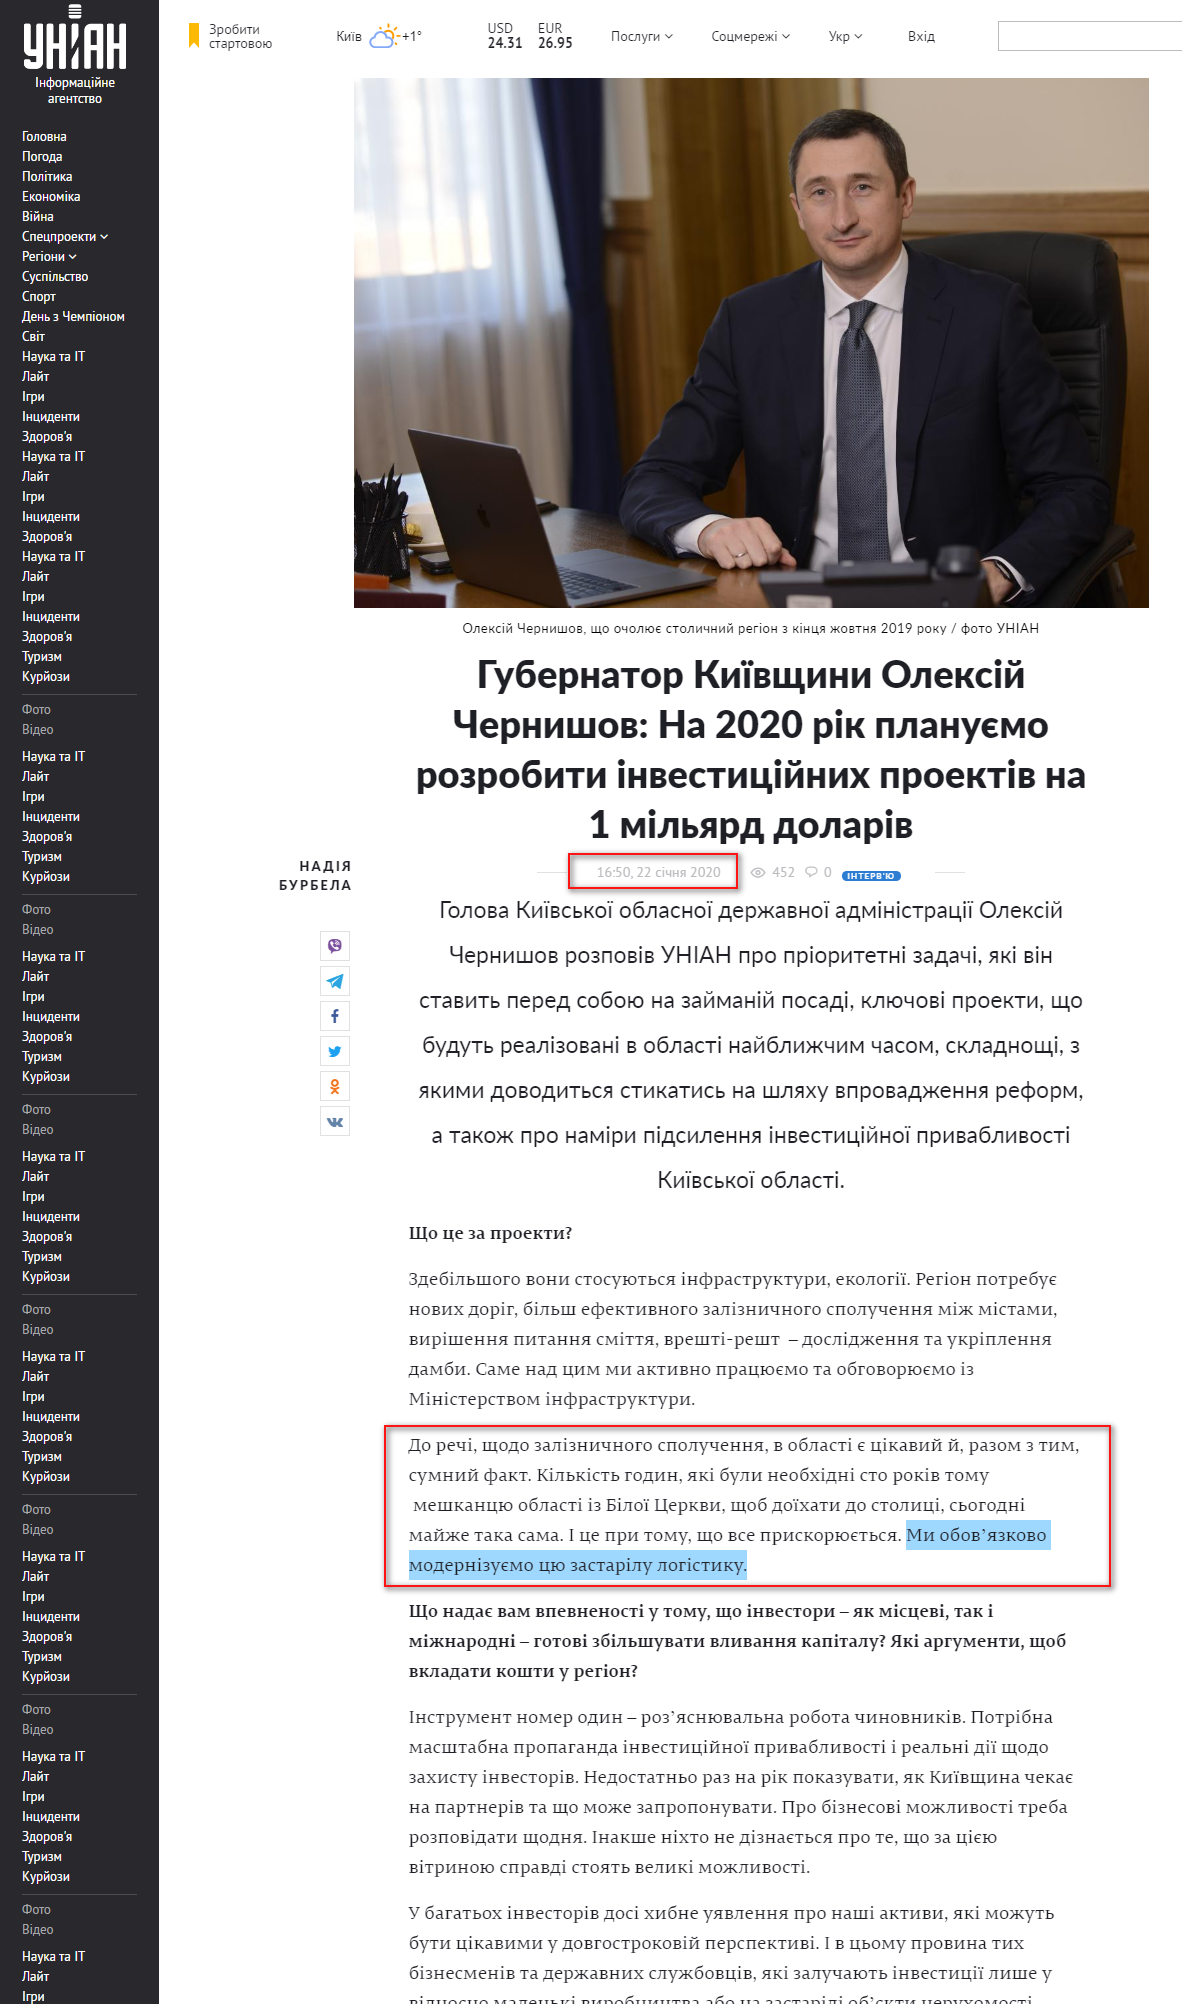 https://www.unian.ua/politics/10841321-gubernator-kijivshchini-oleksiy-chernishov-na-2020-rik-planuyemo-rozrobiti-investiciynih-proektiv-na-1-milyard-dolariv.html